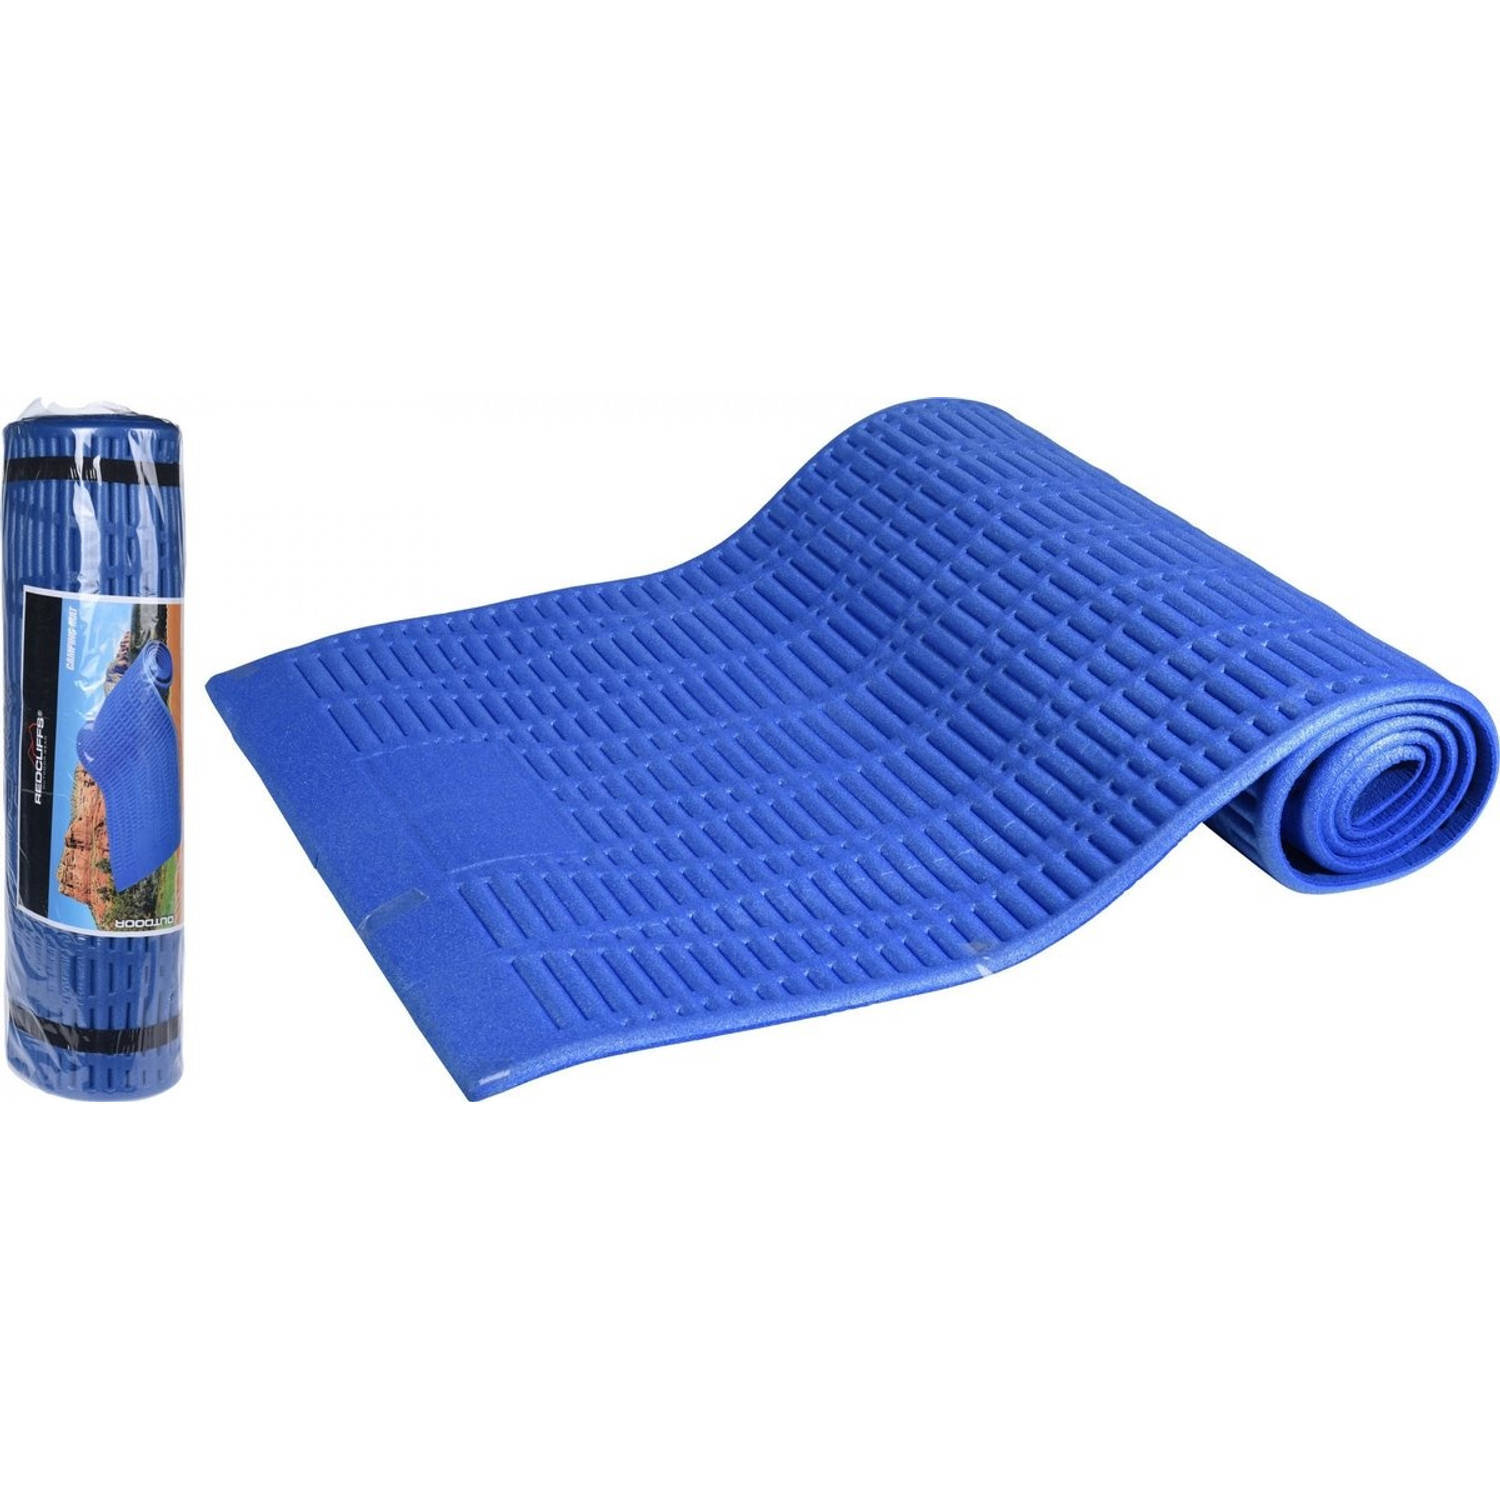 Redcliffs yogamat isolerend - 180 x 59 x 1cm - blauw